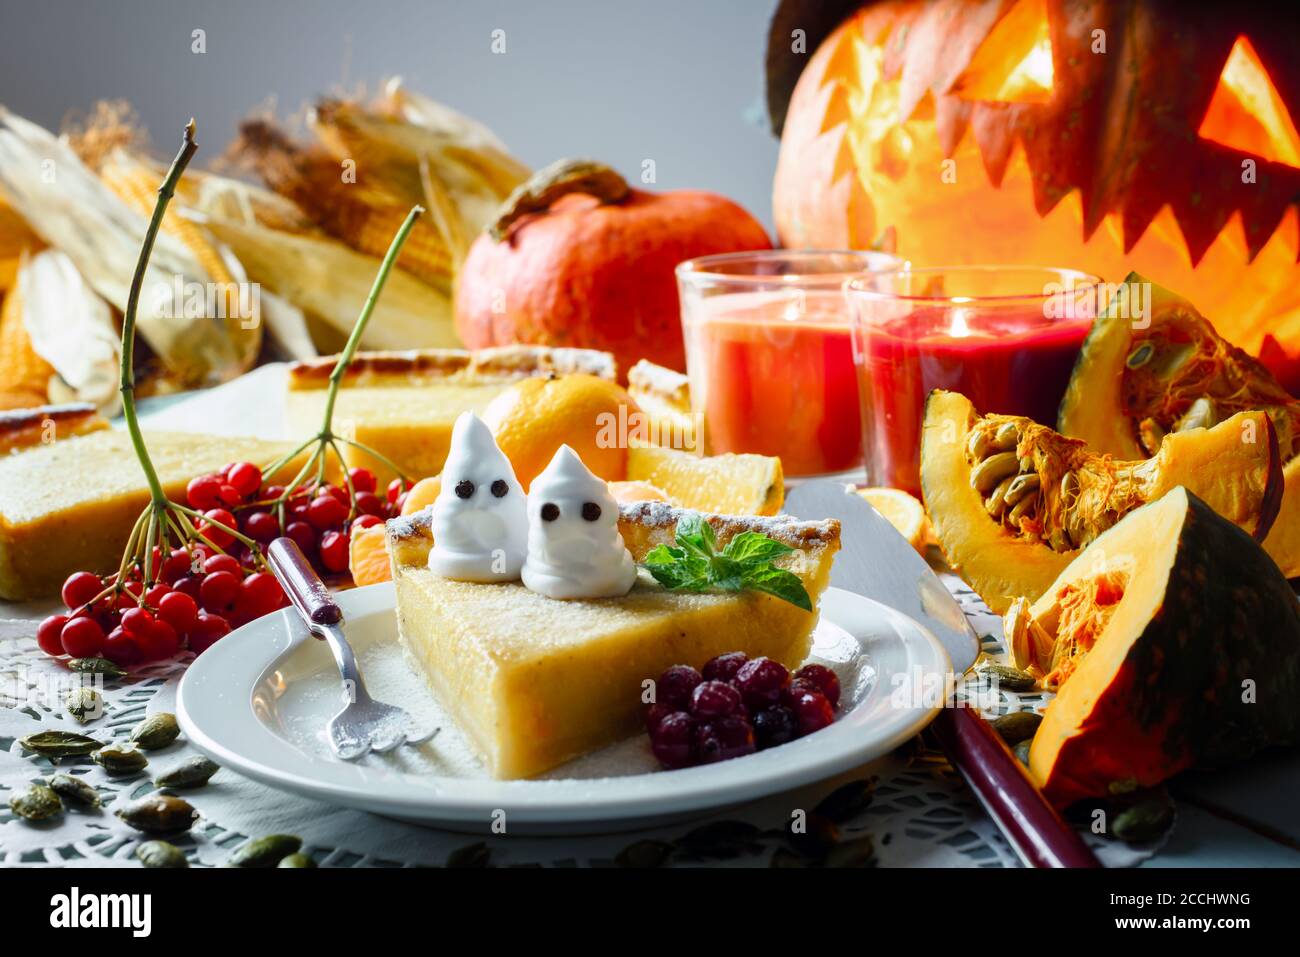 Dolce torta di zucca halloween fatta in casa con foglia di menta e piccoli fantasmi su closeup piatto bianco. Candele e Jack-o-lanterna sullo sfondo. Cibo tradizionale per le vacanze Foto Stock